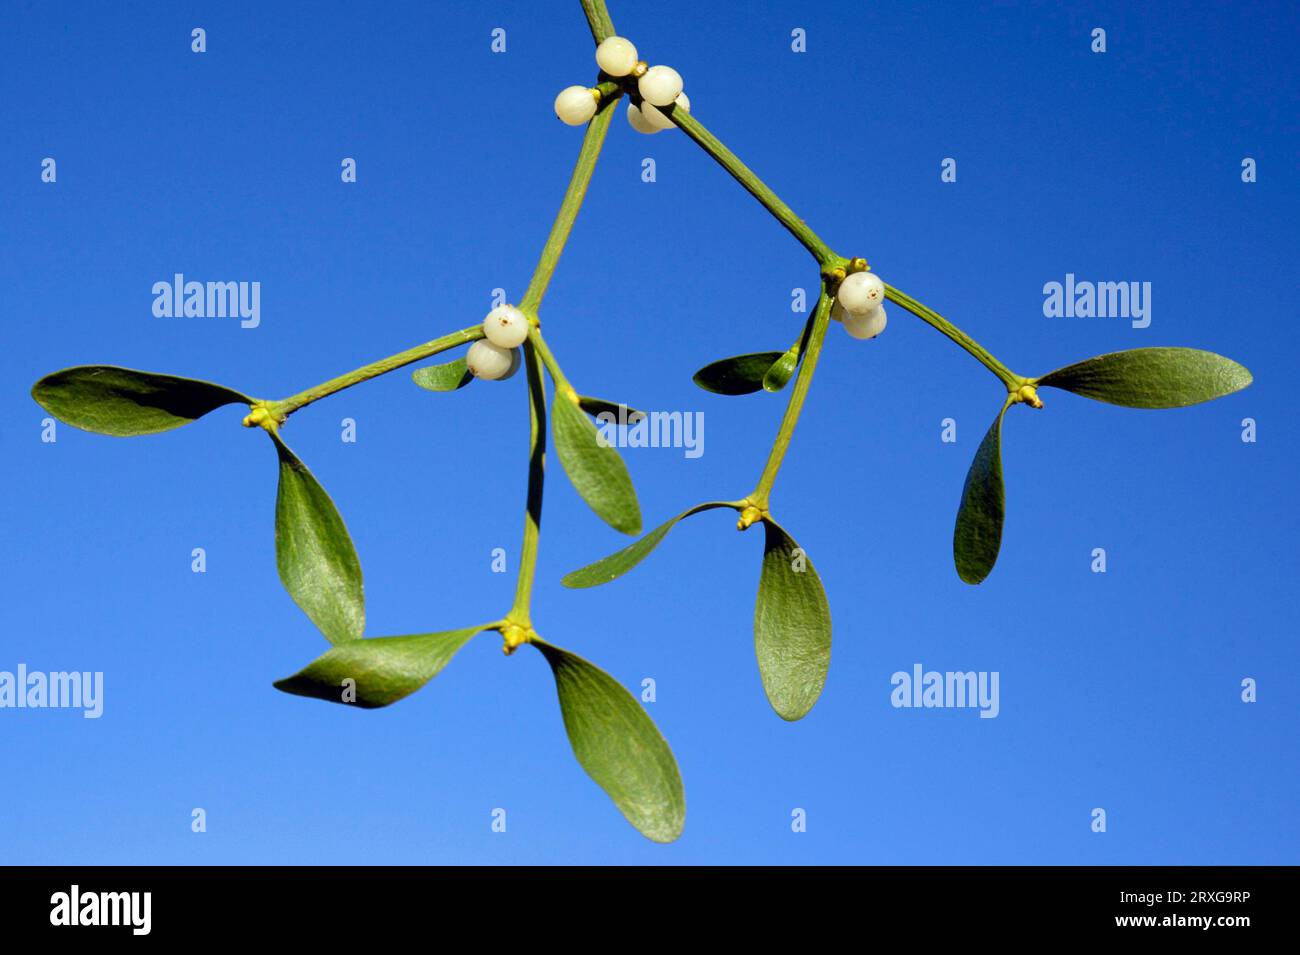 Mistletoe berries, Lower European mistletoe (Viscum album), Mistletoe with berries, Lower Saxony, Strapflower family, Loranthaceae, Germany Stock Photo